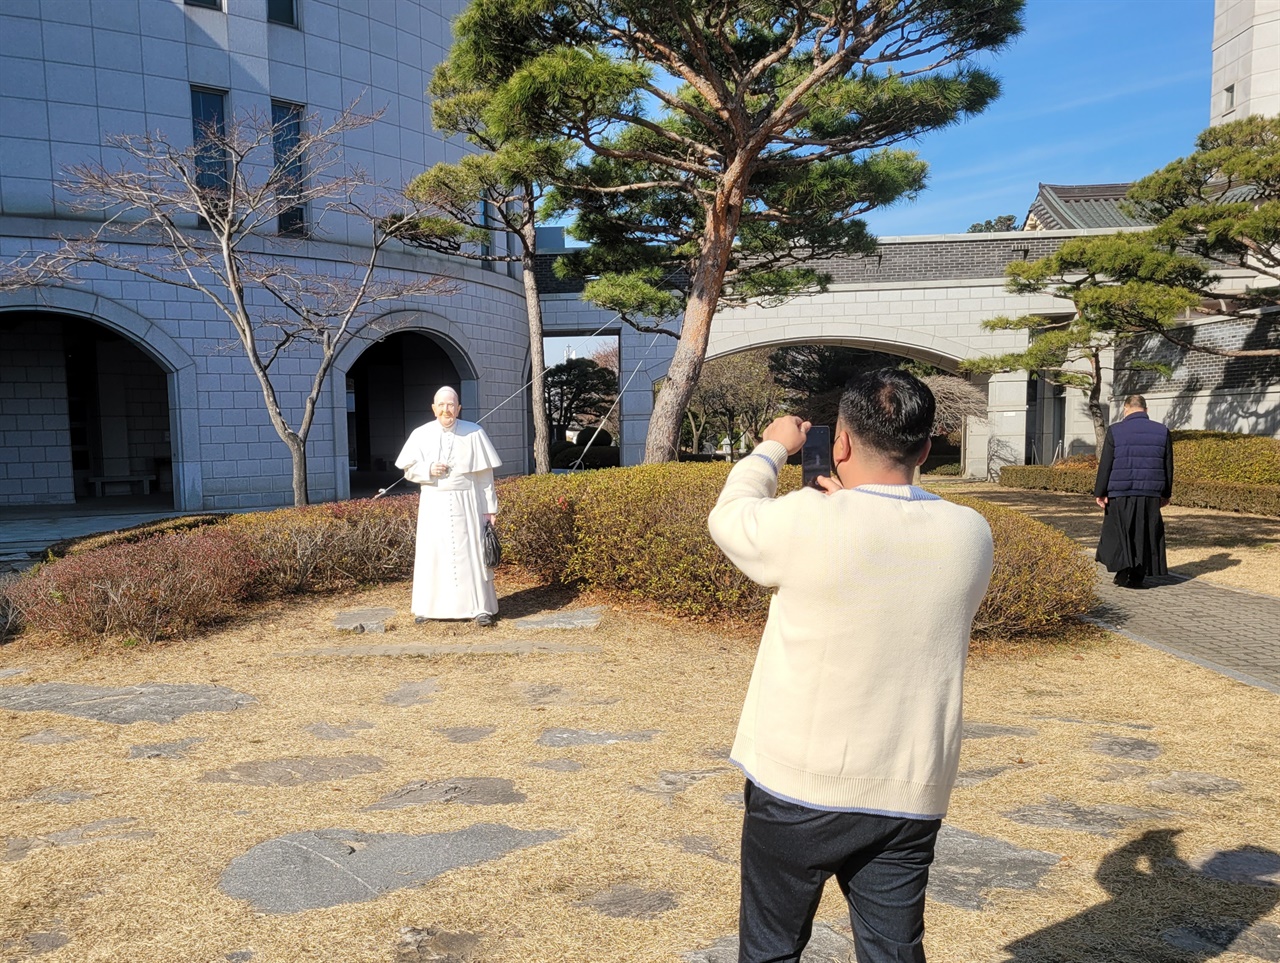 해미국제성지를 방문한 한 순례객이 프란치스코 교황 조형물을 카메라에 담고 있다.